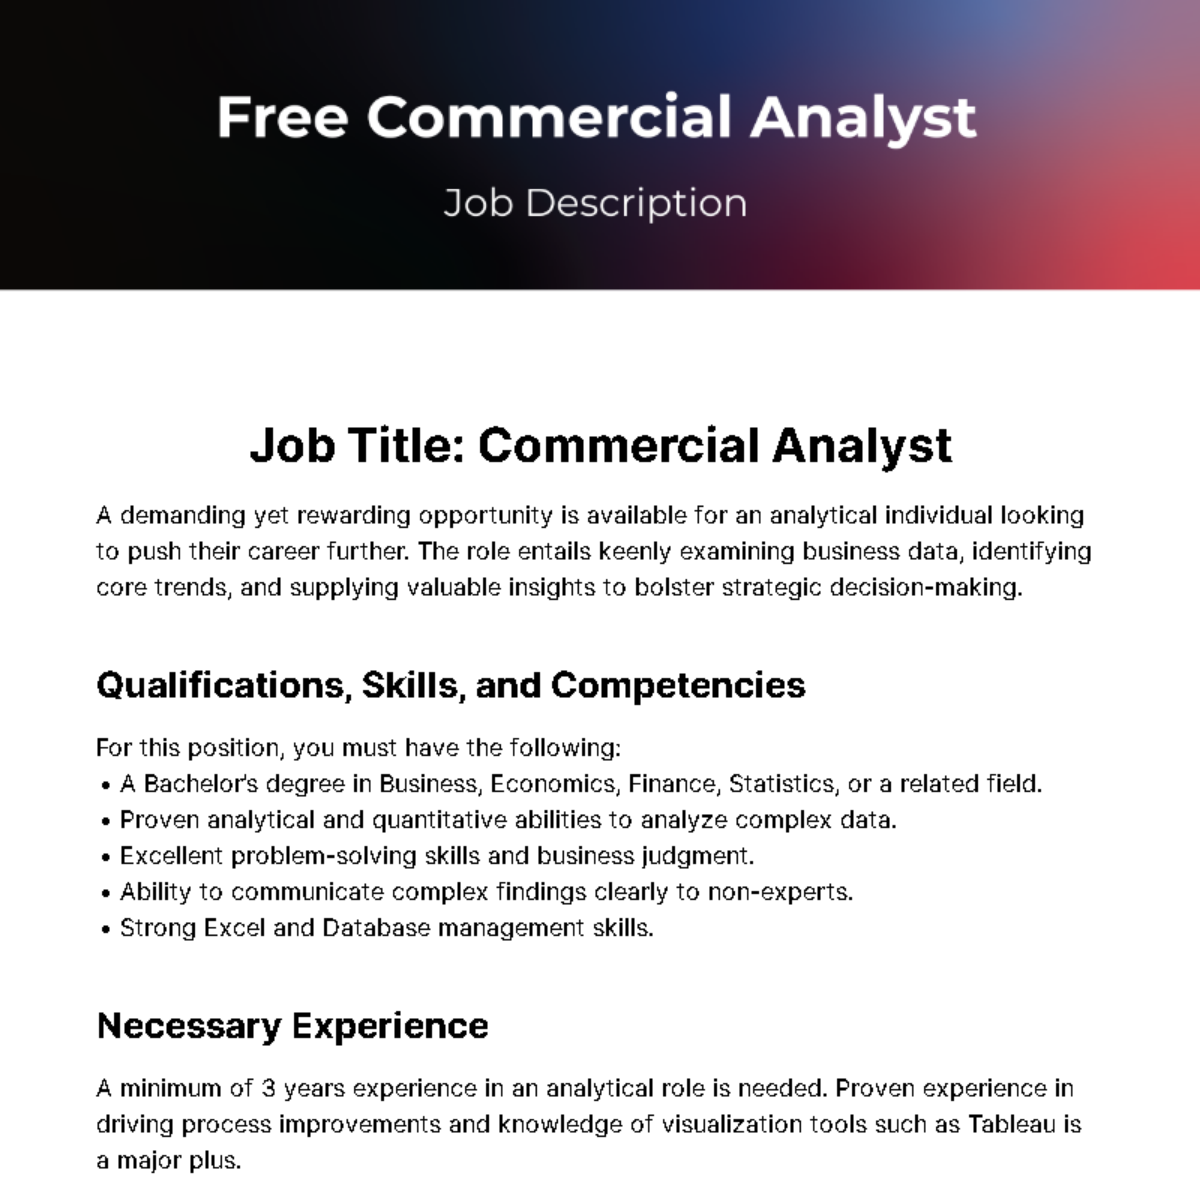 Commercial Analyst Job Description Template